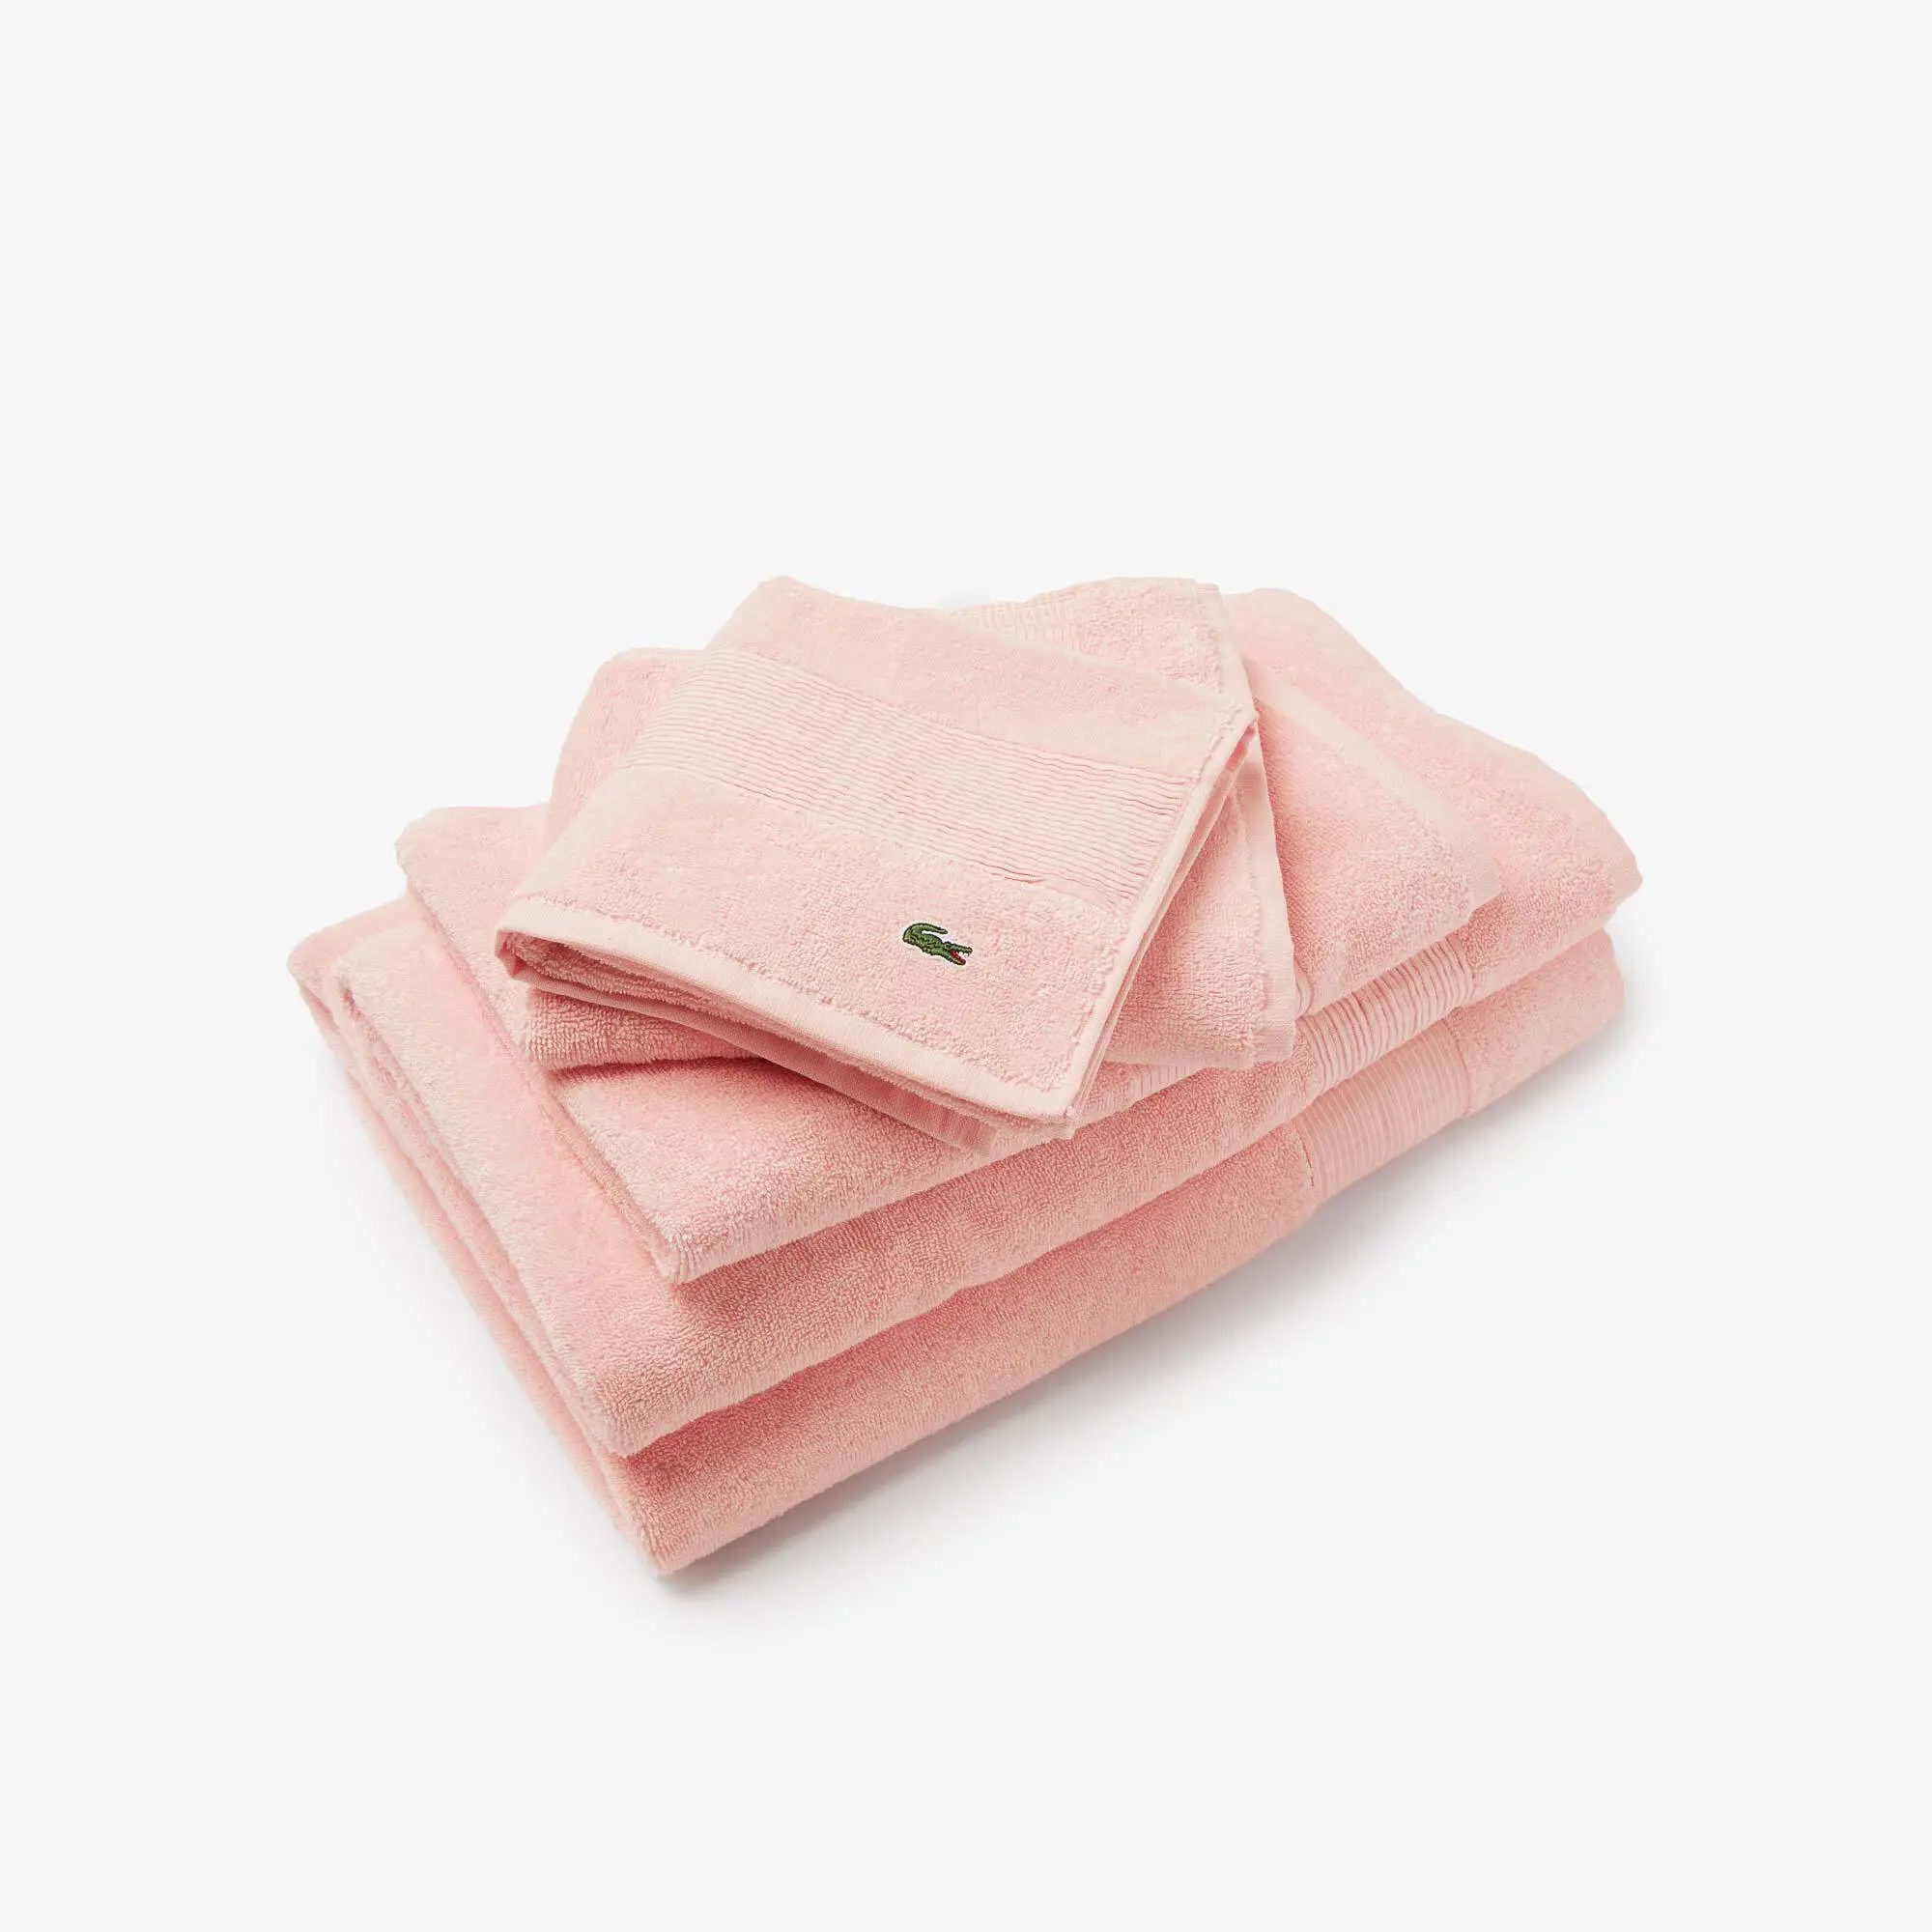 Lacoste Pleated Details Cotton L Lecroco Towel. 1